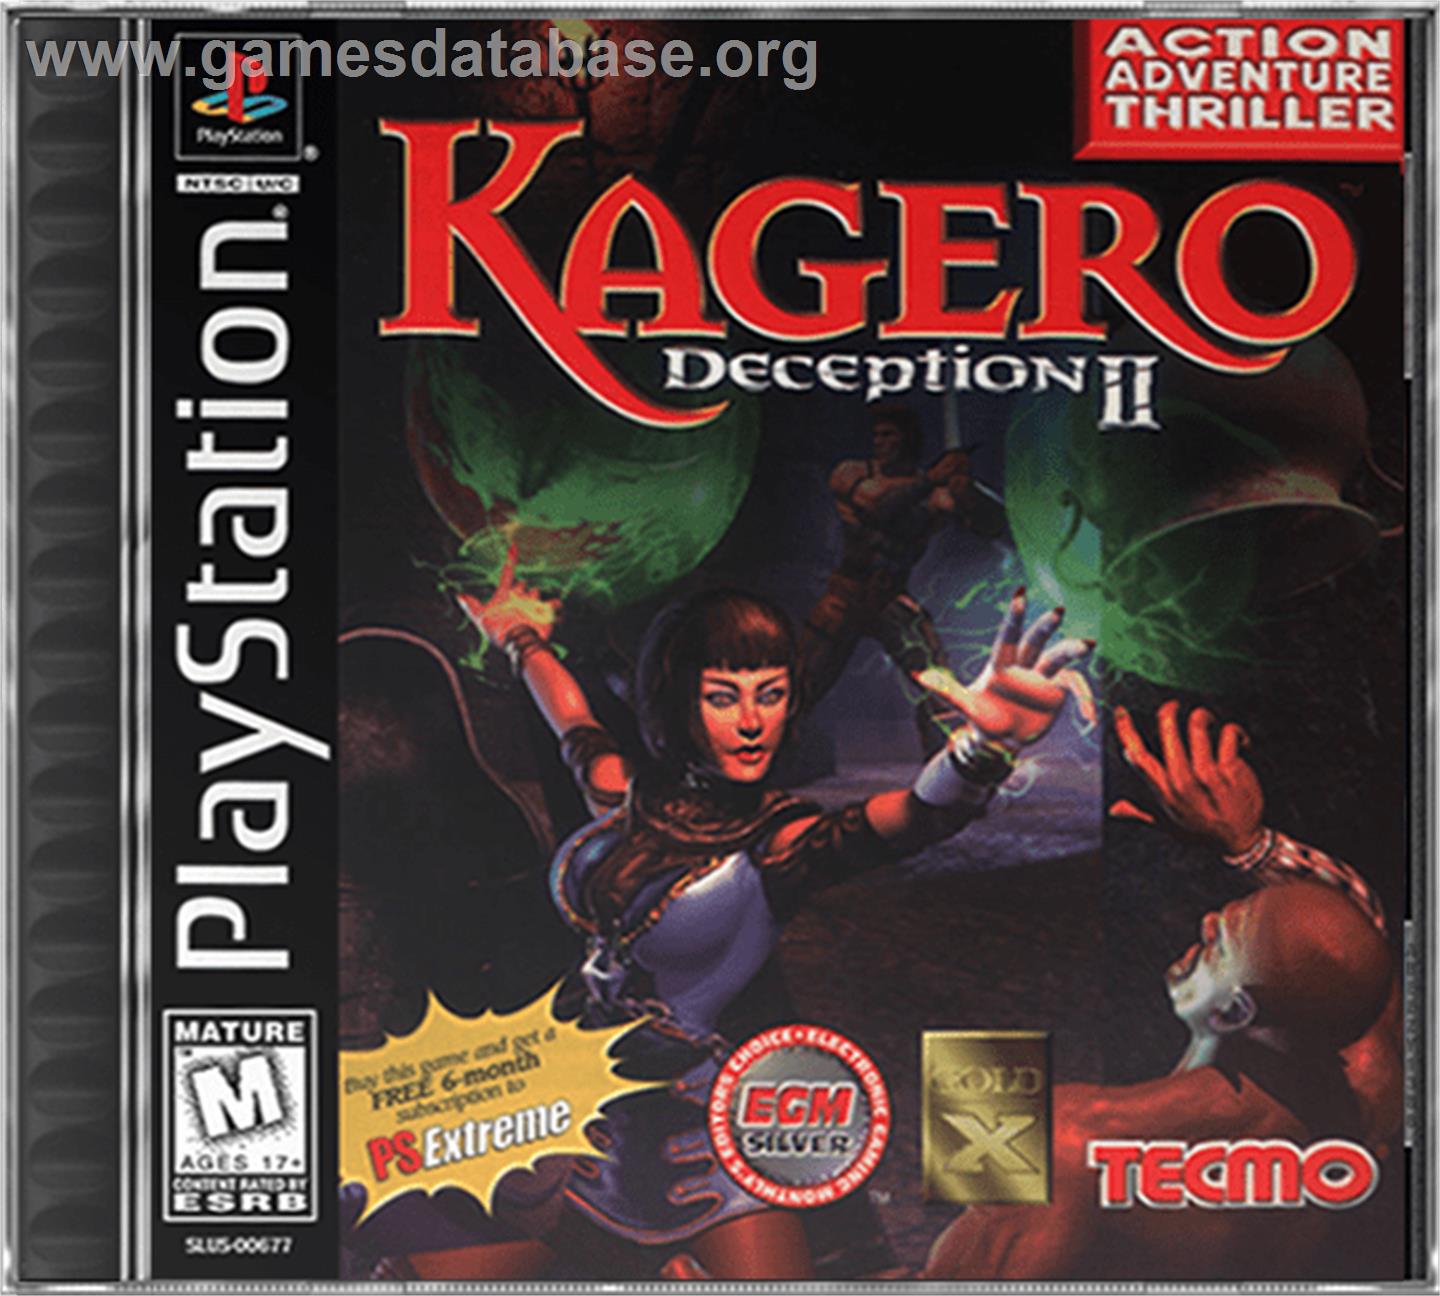 Kagero: Deception II - Sony Playstation - Artwork - Box